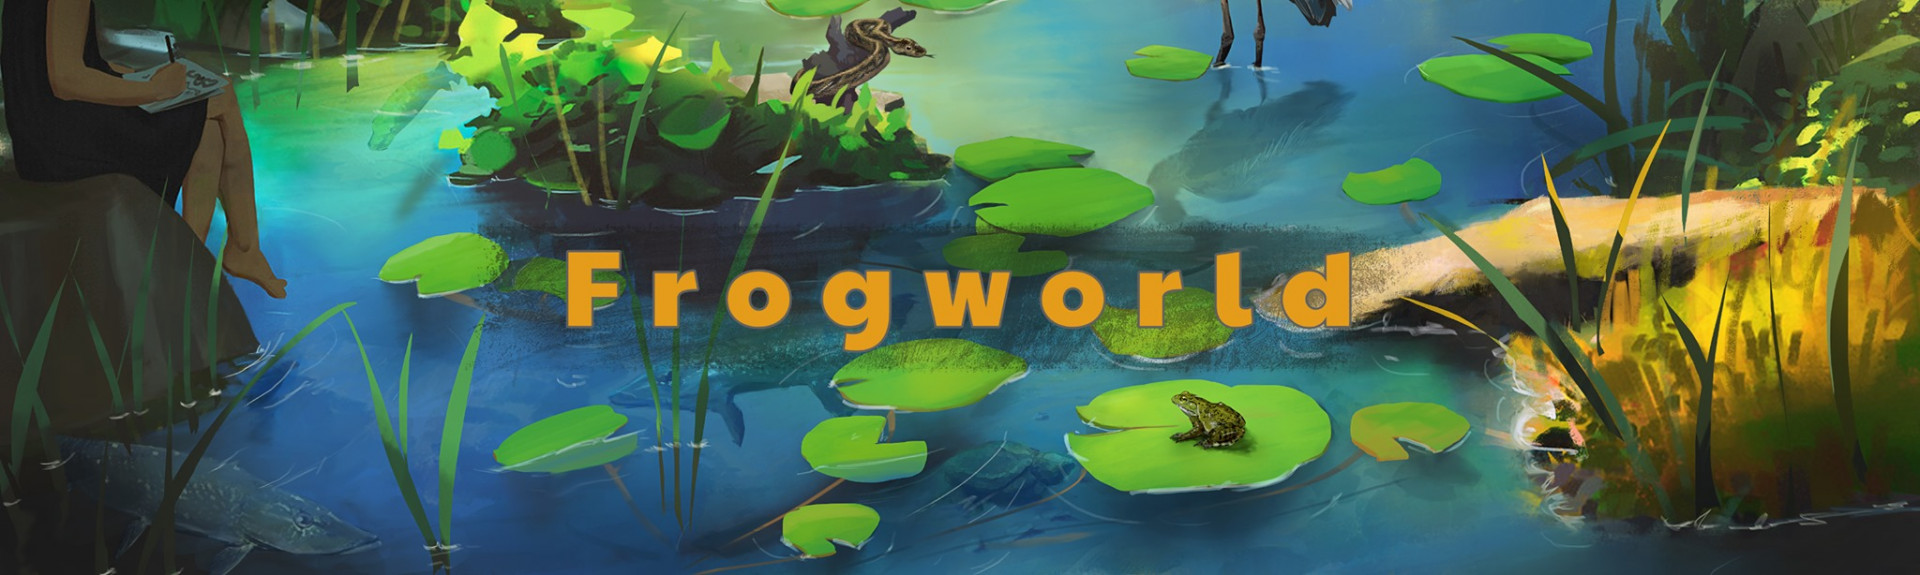 Frogworld